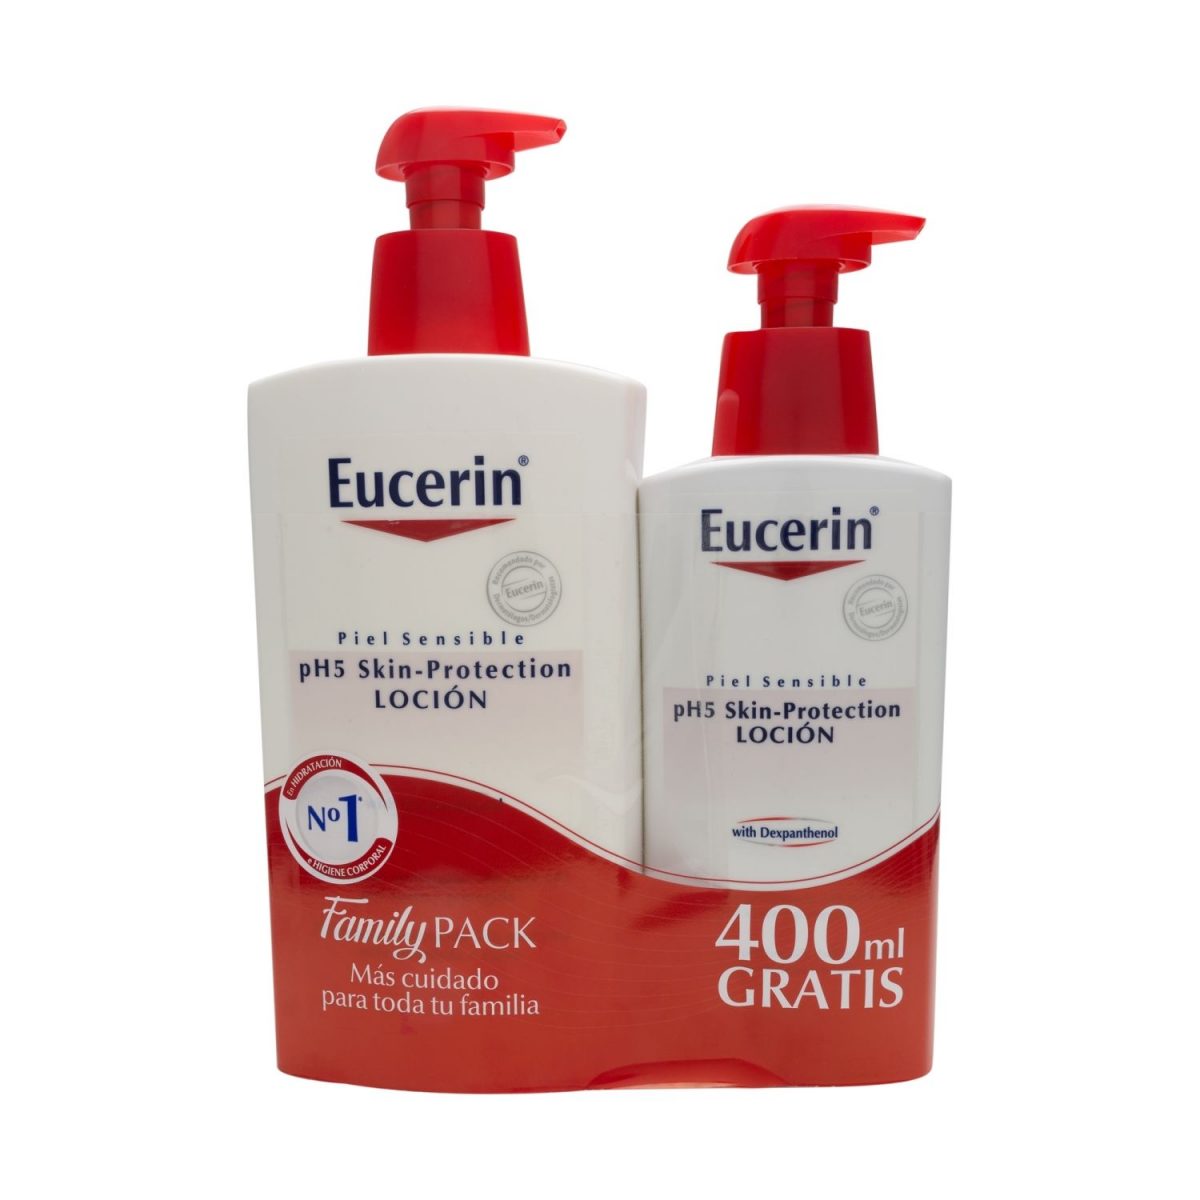 Comprar Eucerin pH5 Loción Hidratante en Farmacia Central Andorra regenera la protección natural de la piel una loción corporal formulada especialmente para las necesidades de la piel sensible que proporciona 24 horas de hidratación.